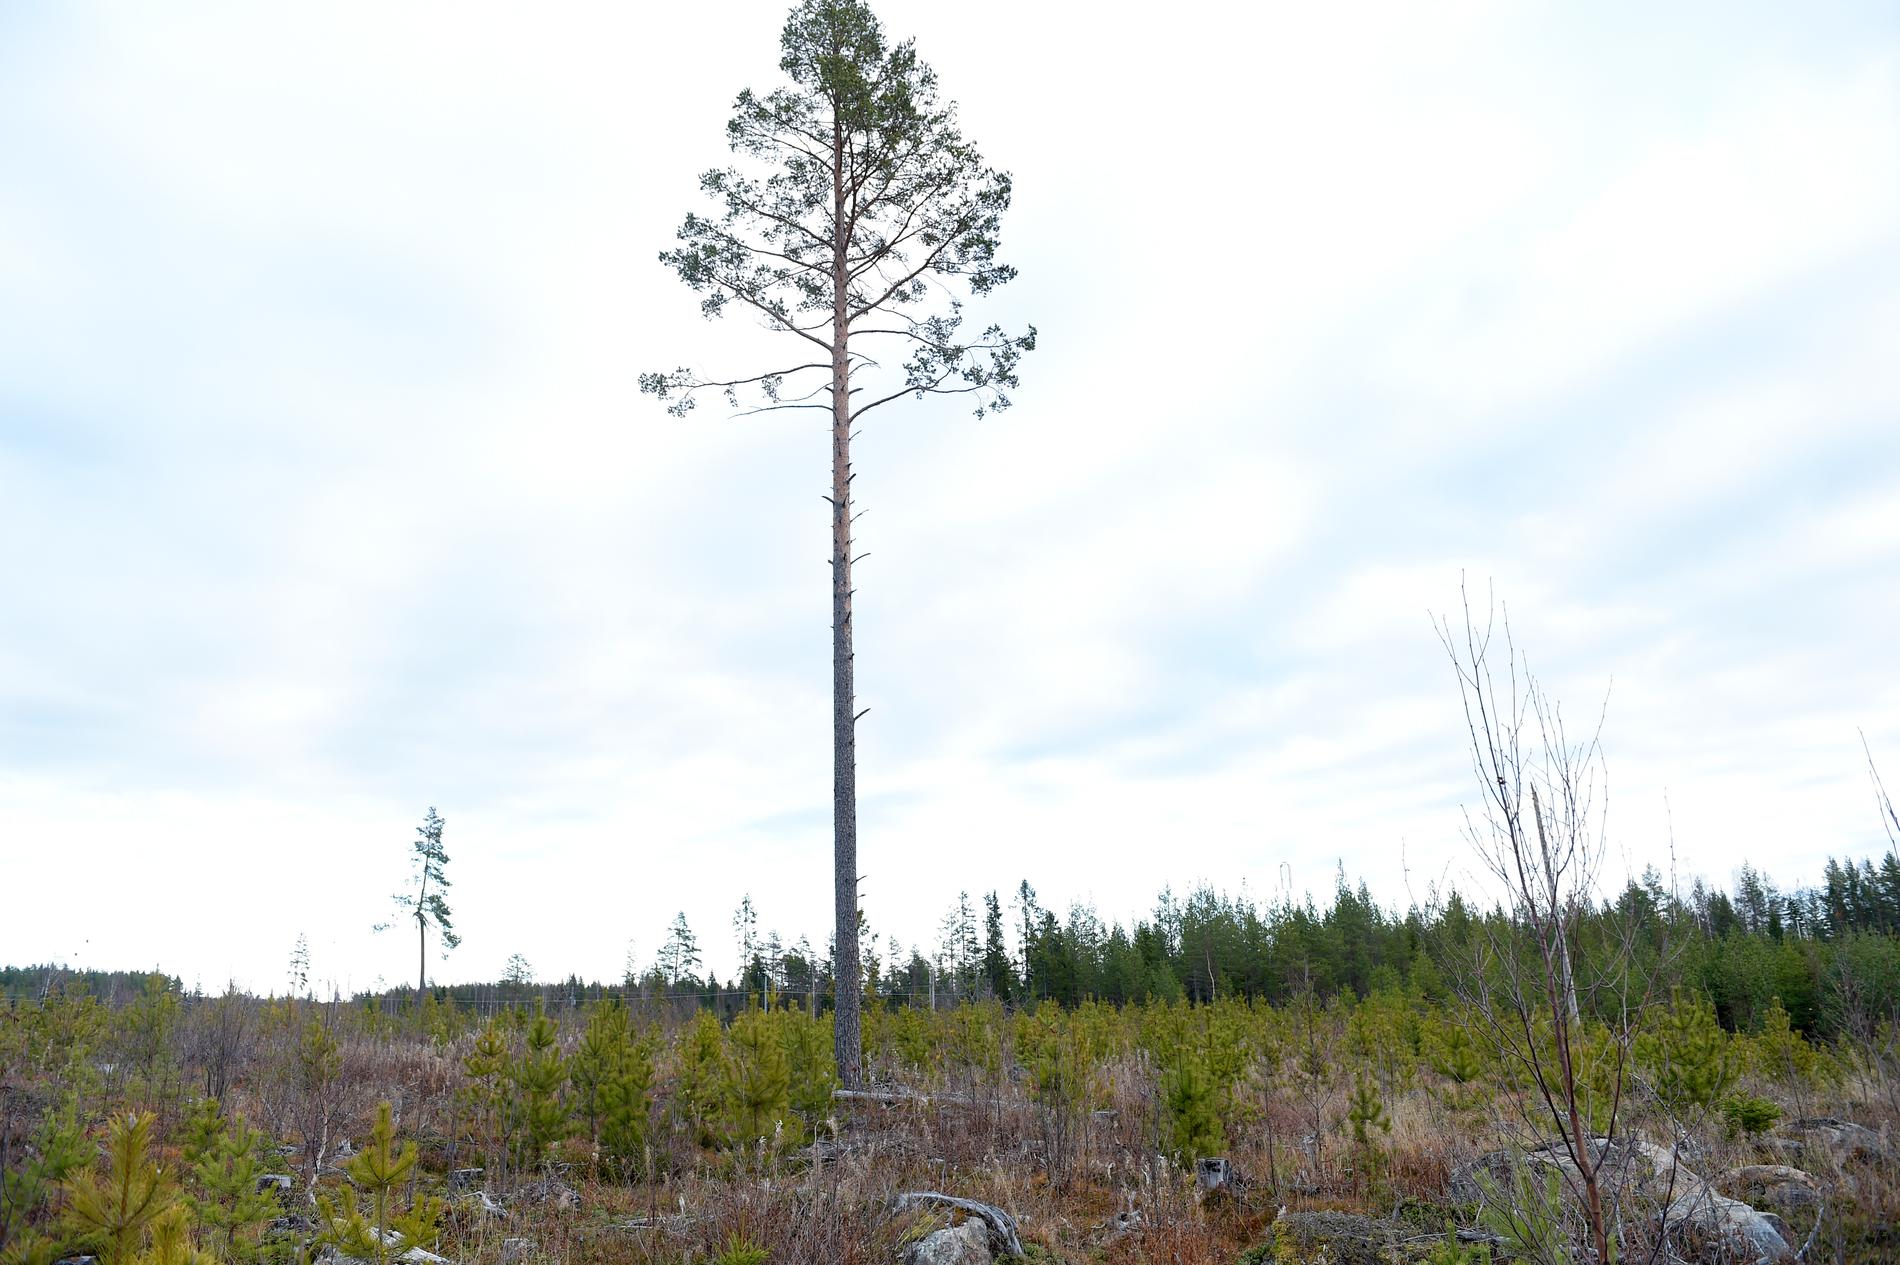 Nordiska länder och skogsindustrin har protesterat mot tidigare förslag från EU-kommissionen. Nu presenteras omarbetade förslag där synpunkterna tycks ha fått gehör vad gäller framtida klassificering av hållbara investeringar. Arkivbild.